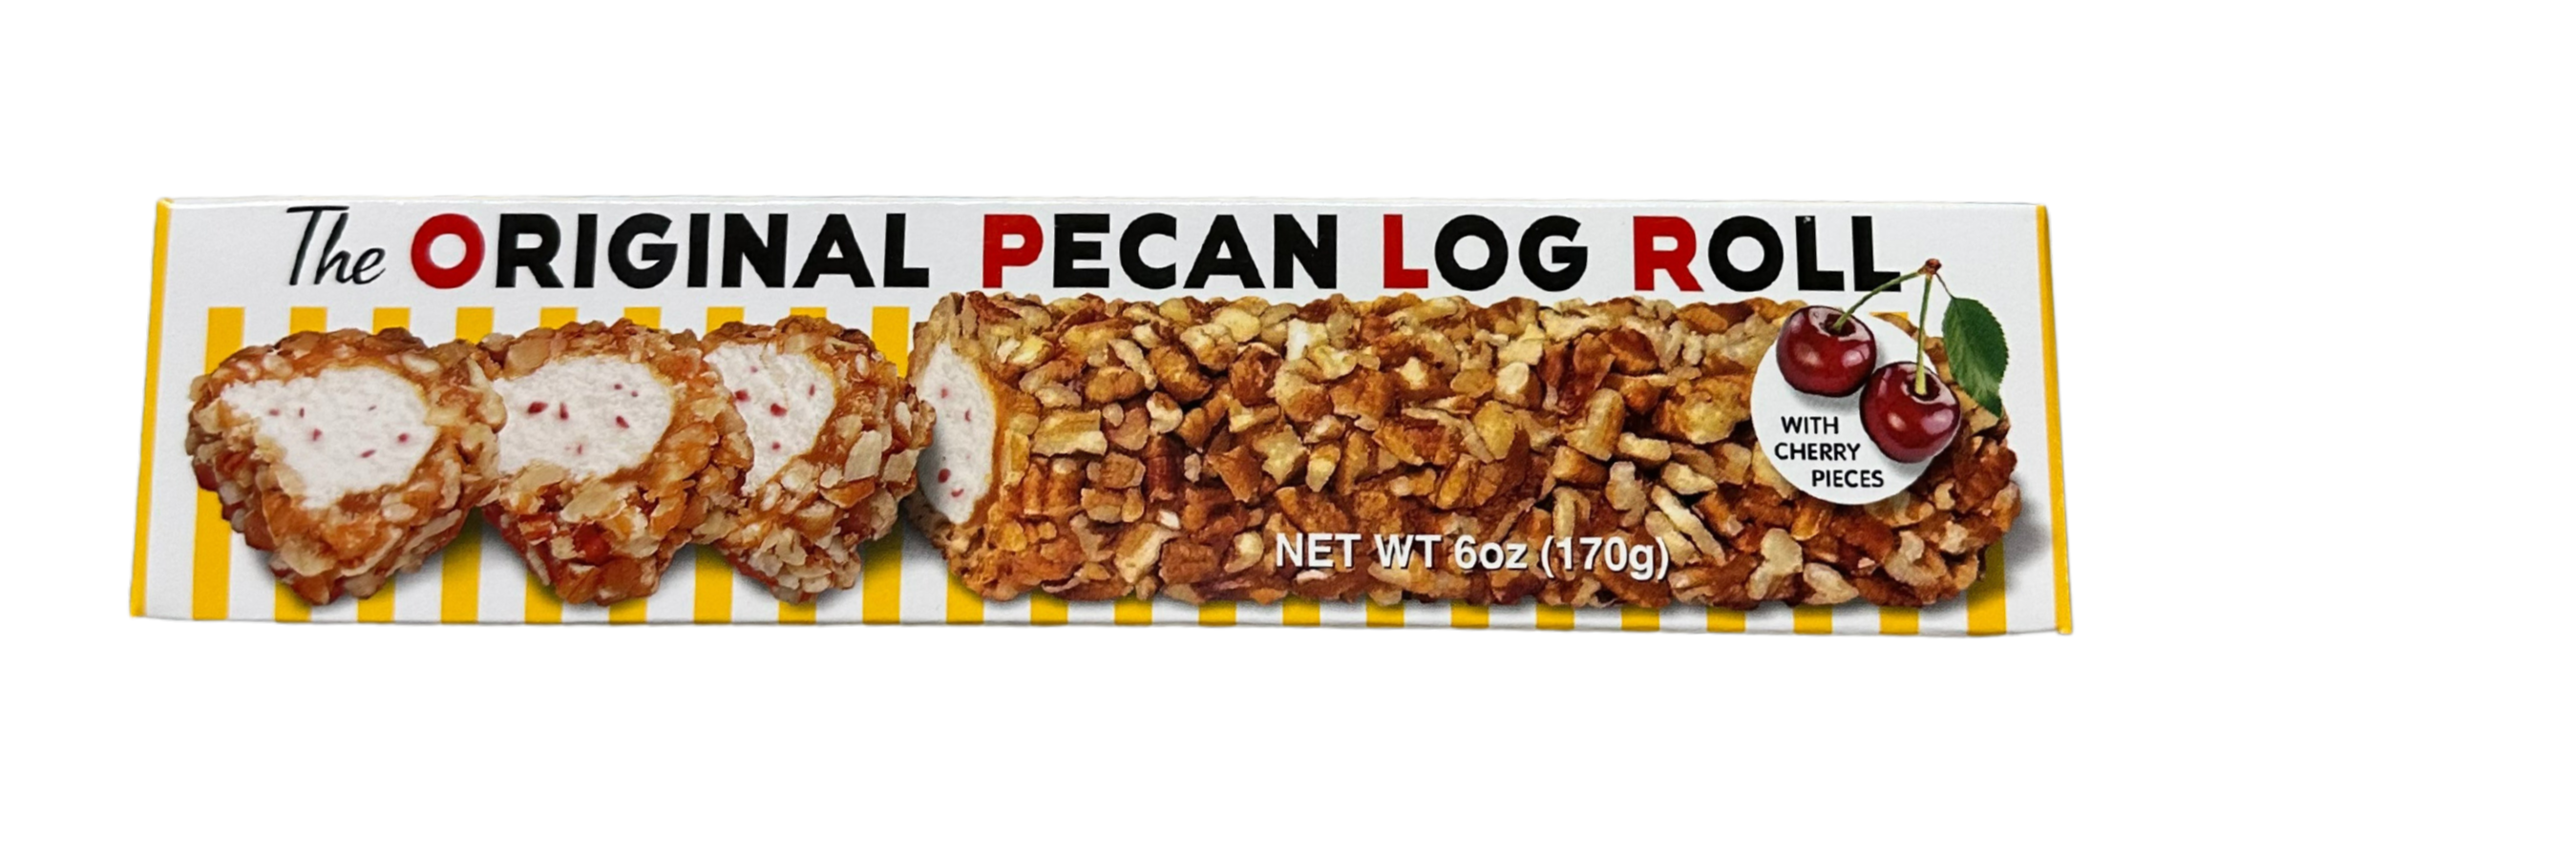 Pecan Log Roll for Sale  Pecan Log Candy Bar, Caramel Nougat